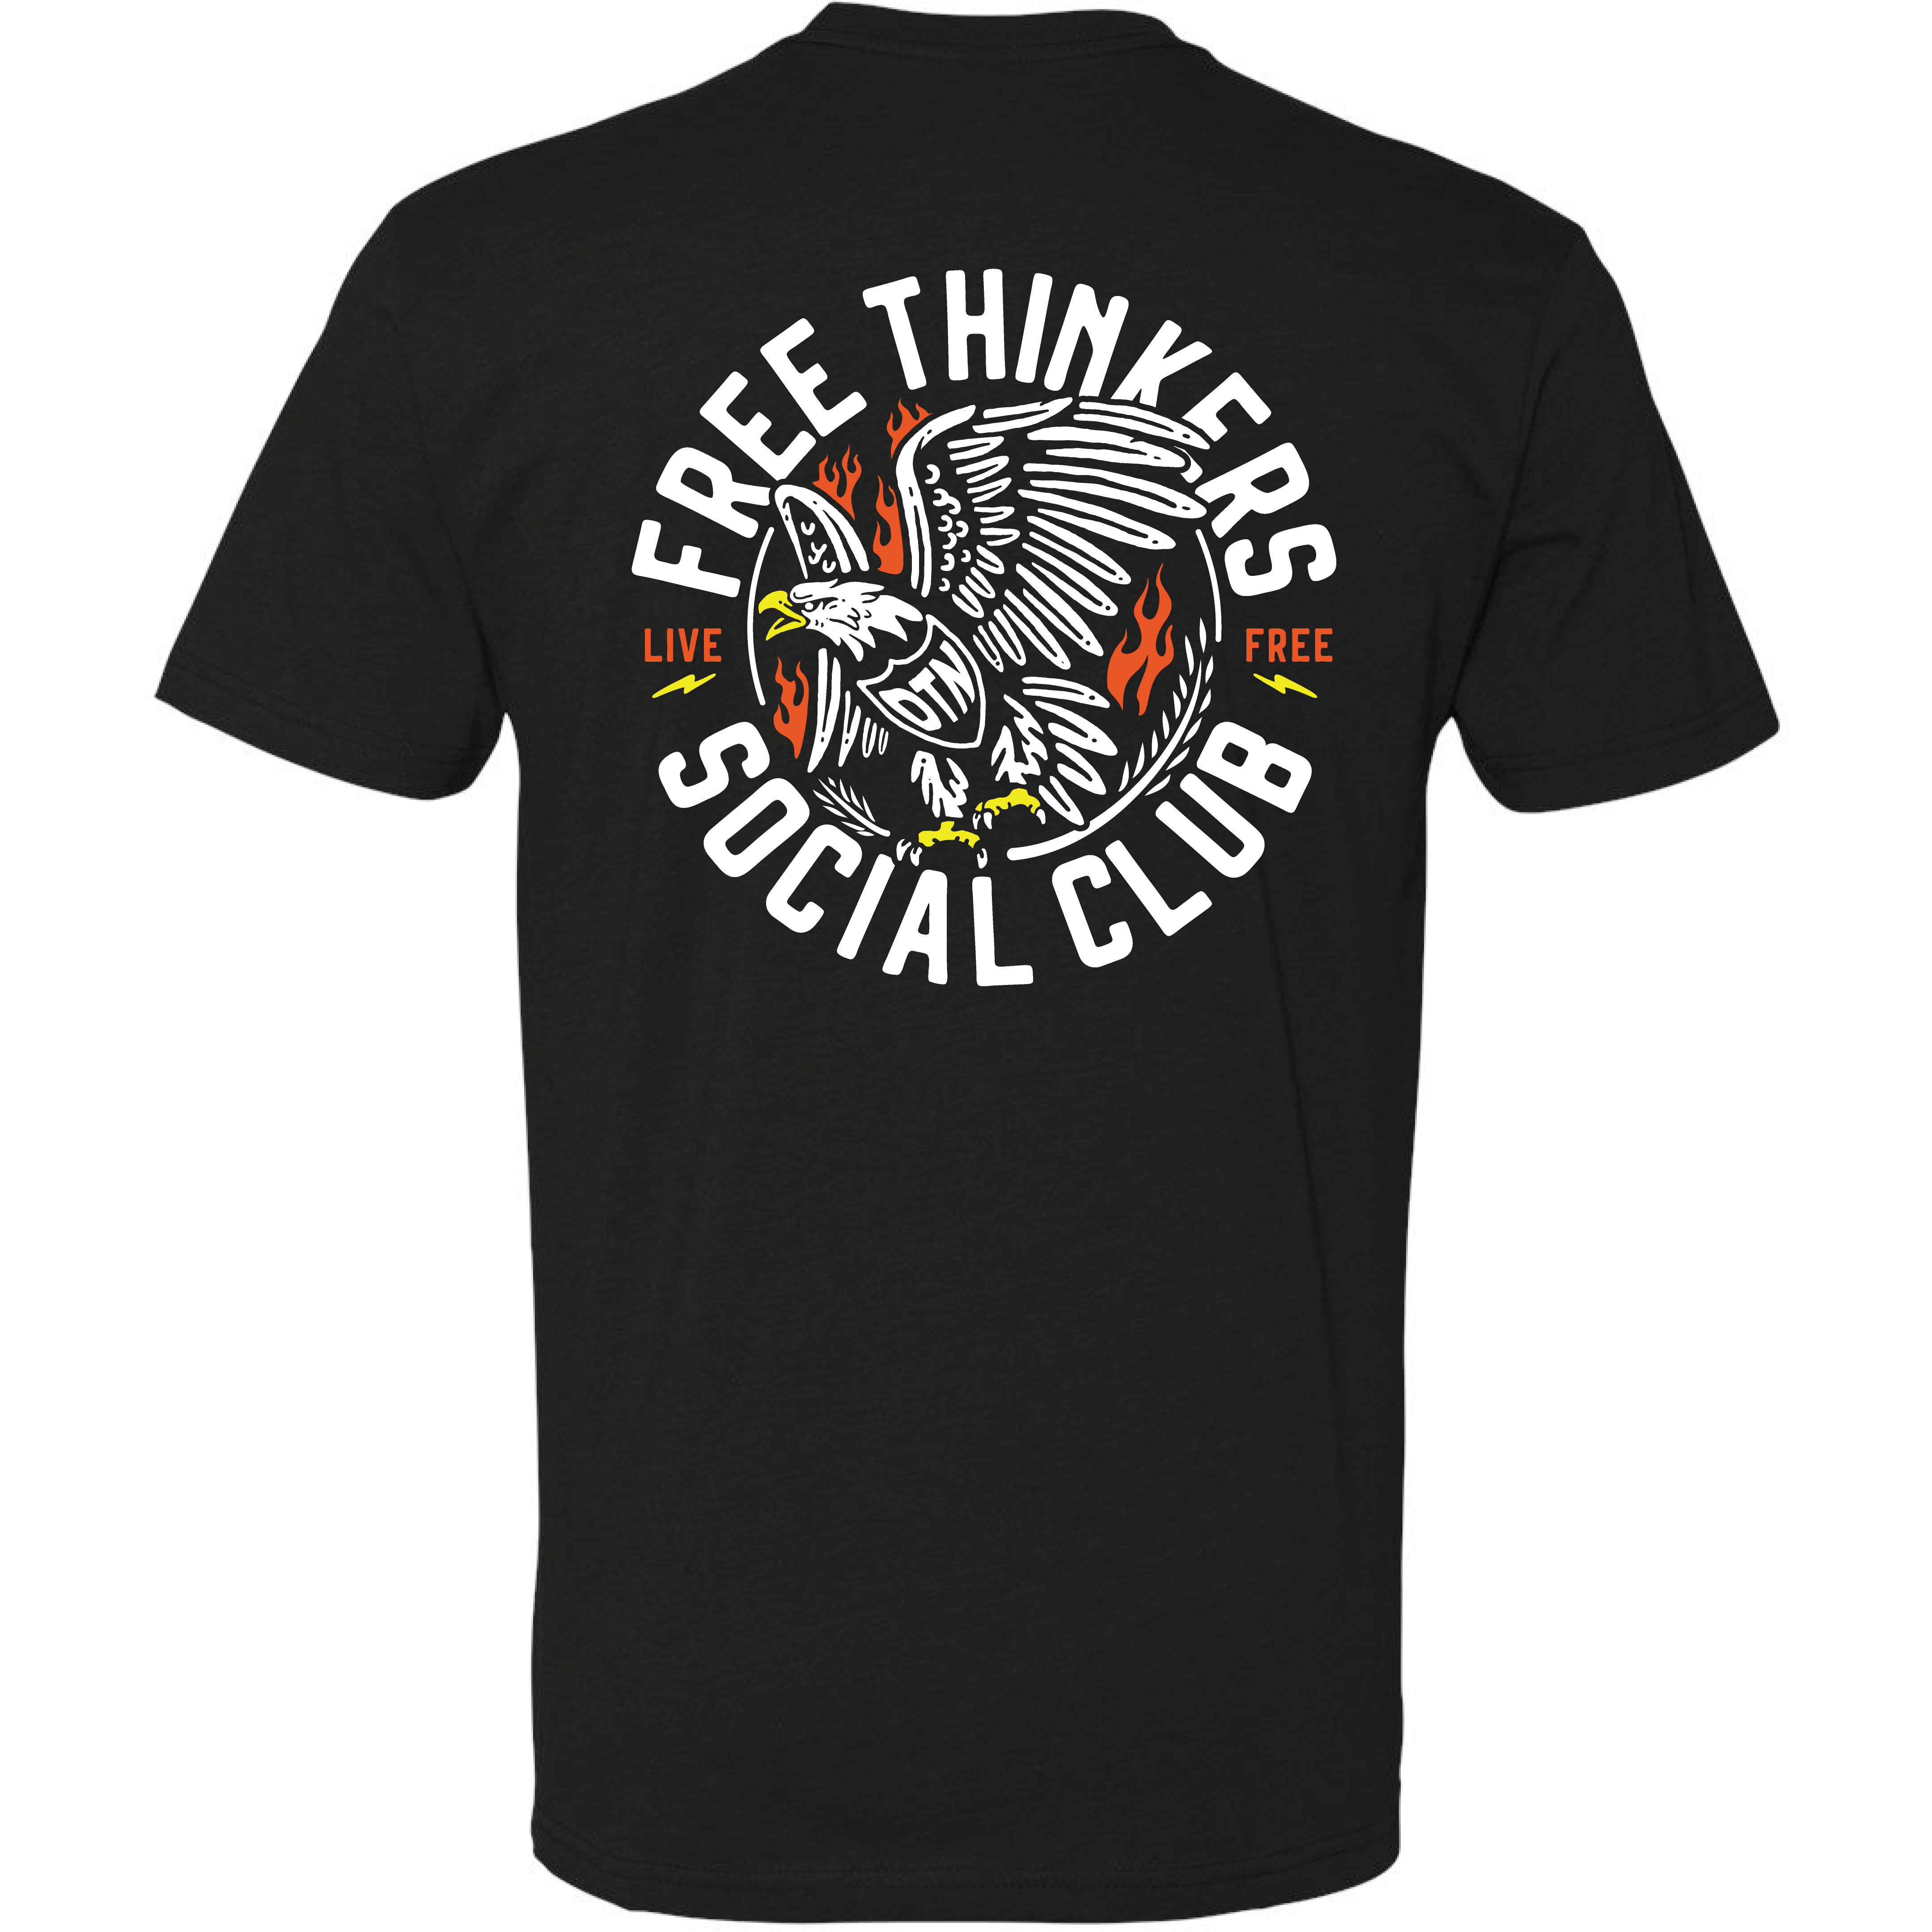 Free Thinkers Social Club T-Shirt